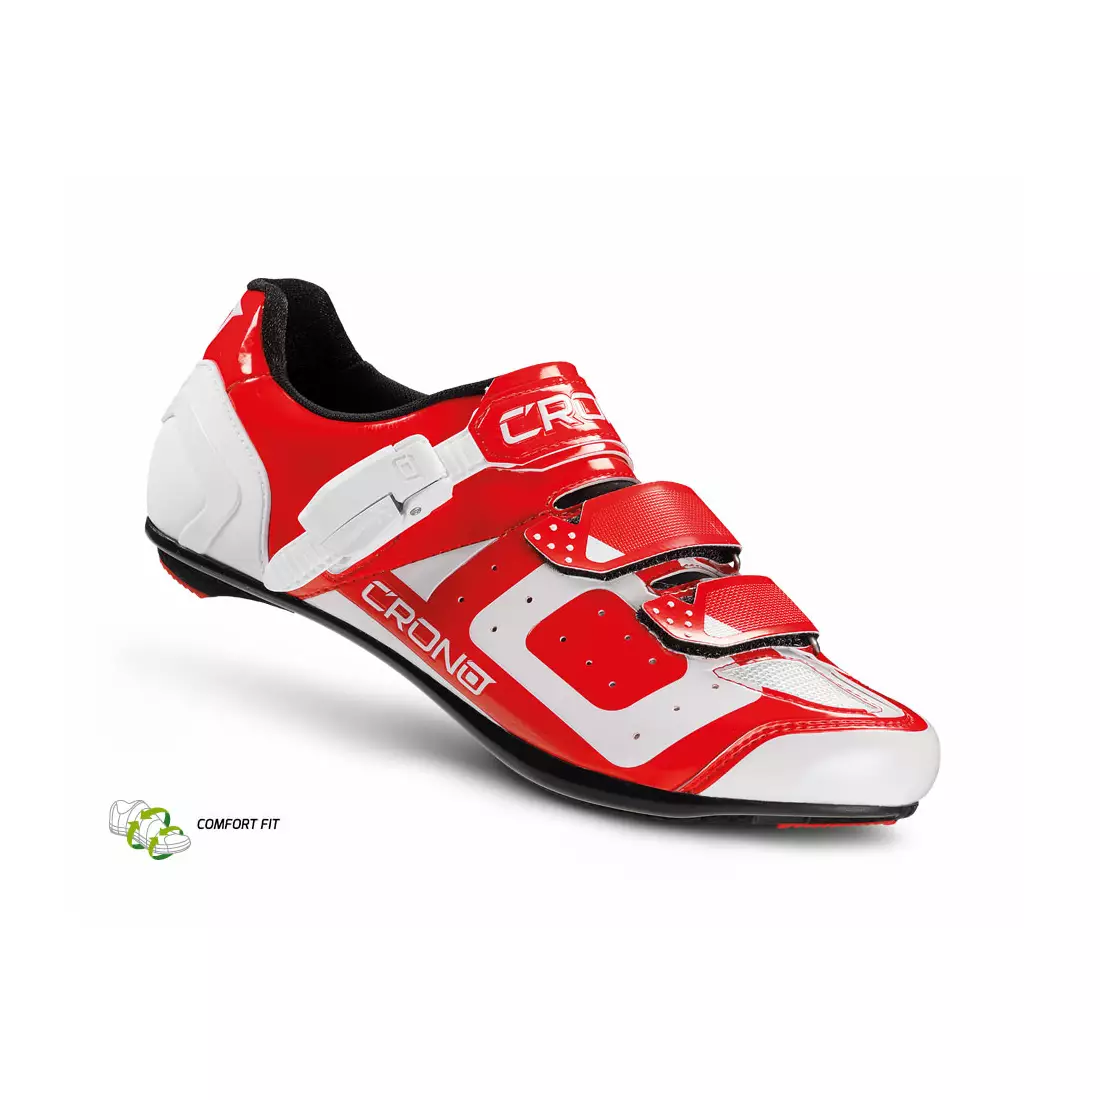 CRONO CR3 nylon - cestná cyklistická obuv, červená